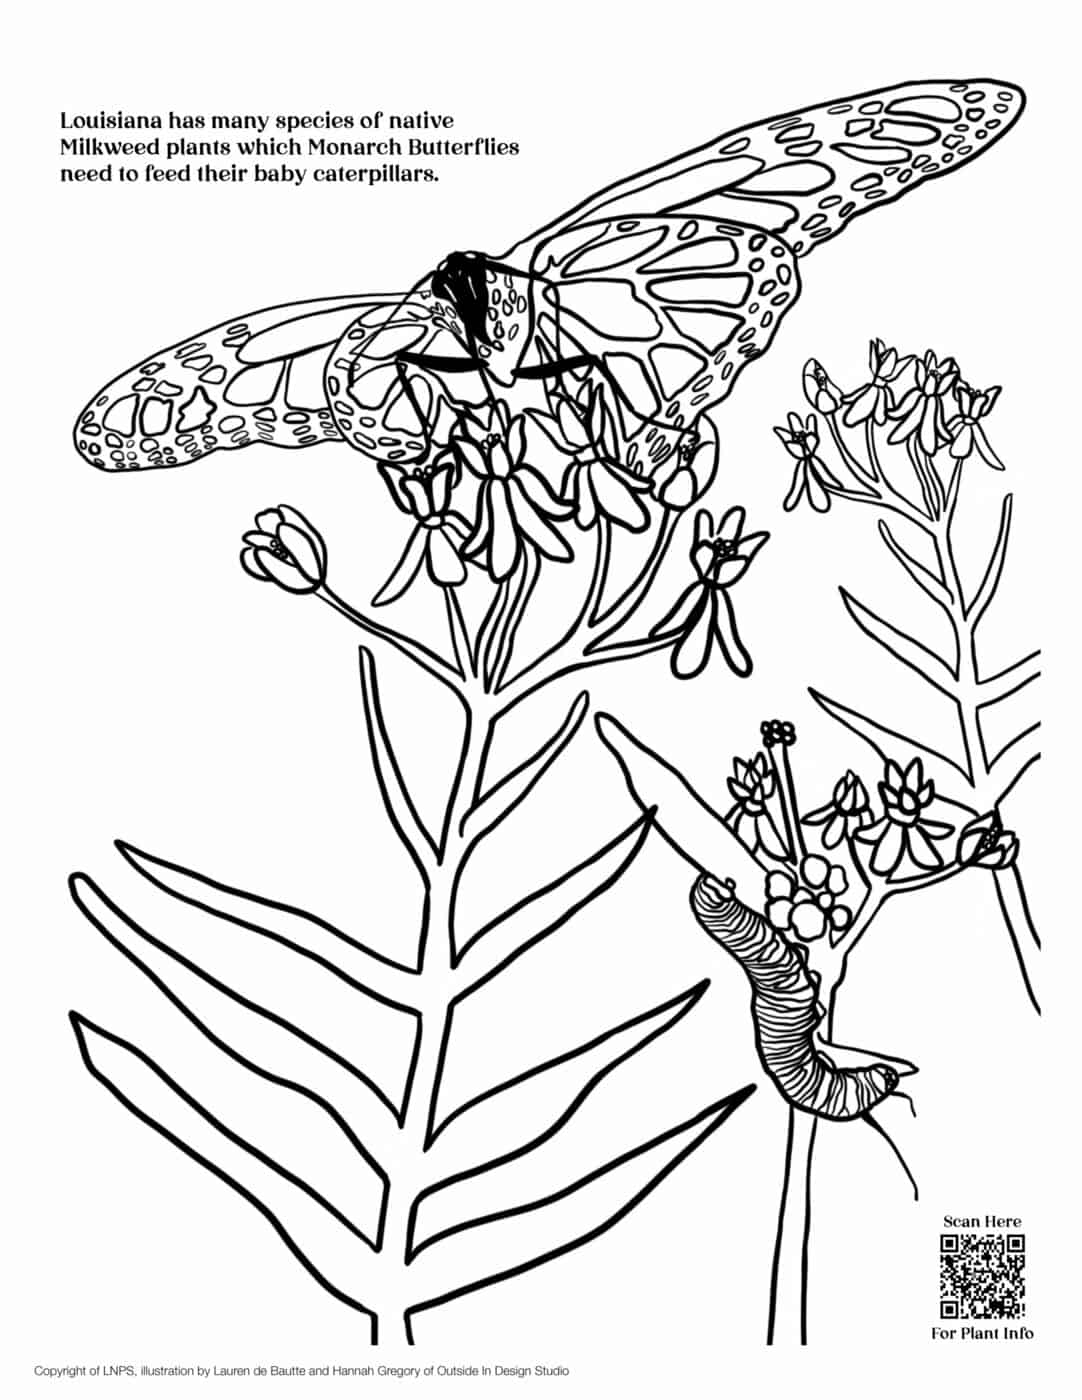 LNPS - Coloring Book - Milkweed_Monarchs